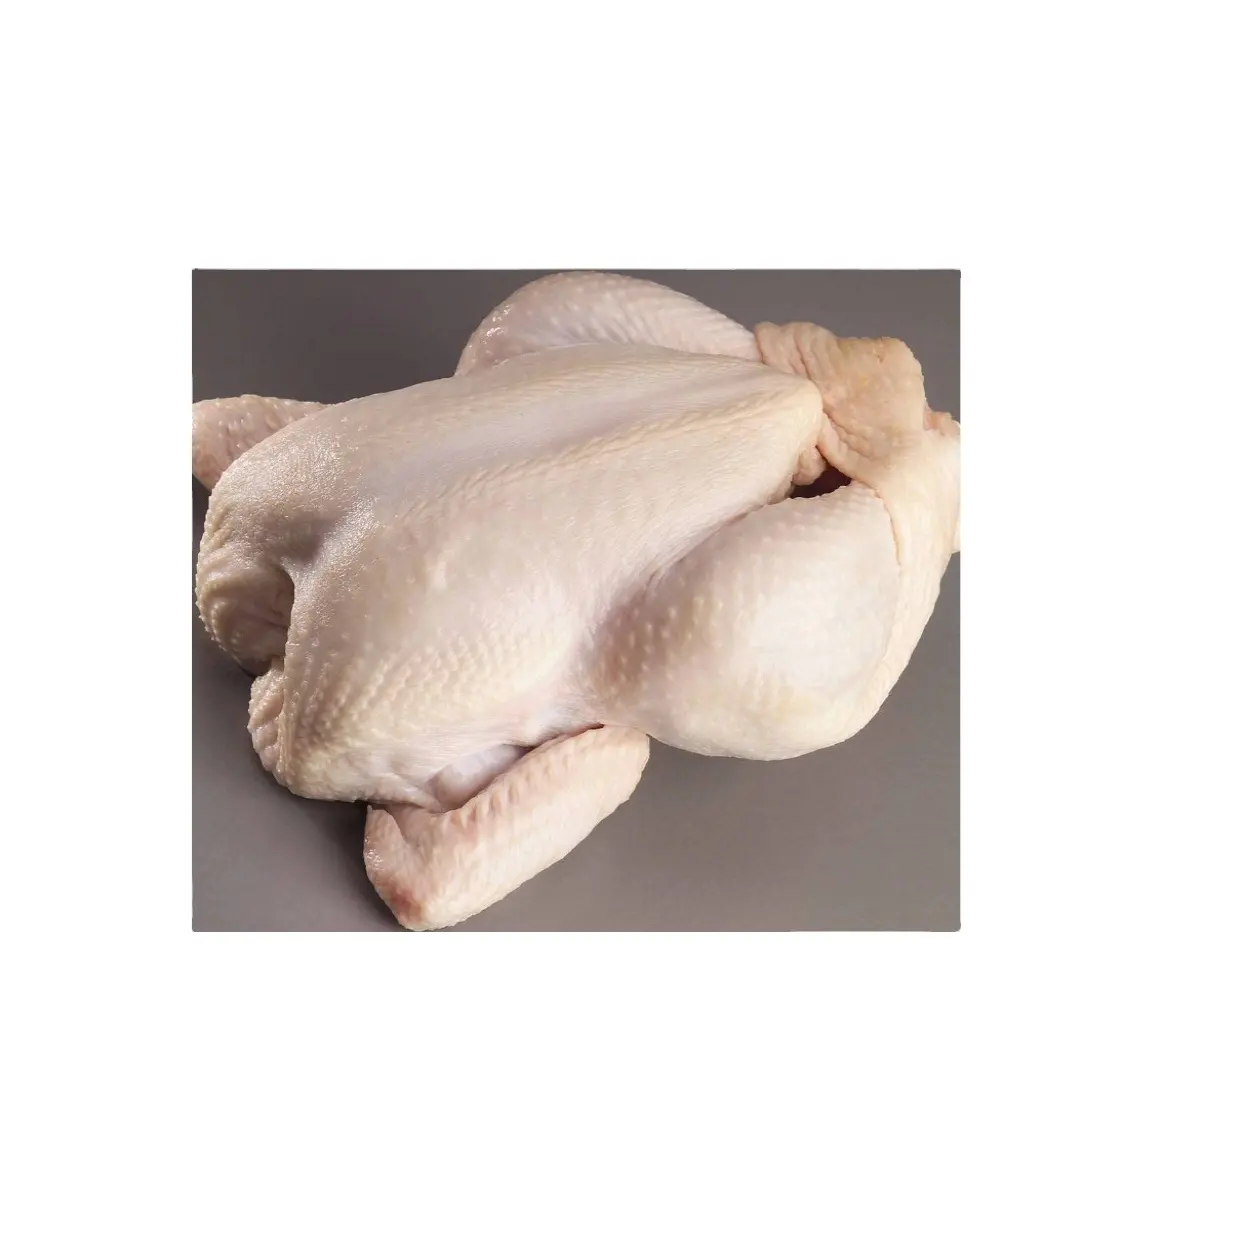 Galinha todo congelada halal 800-2200 gramas 400-700 grama as para comida frango congelado